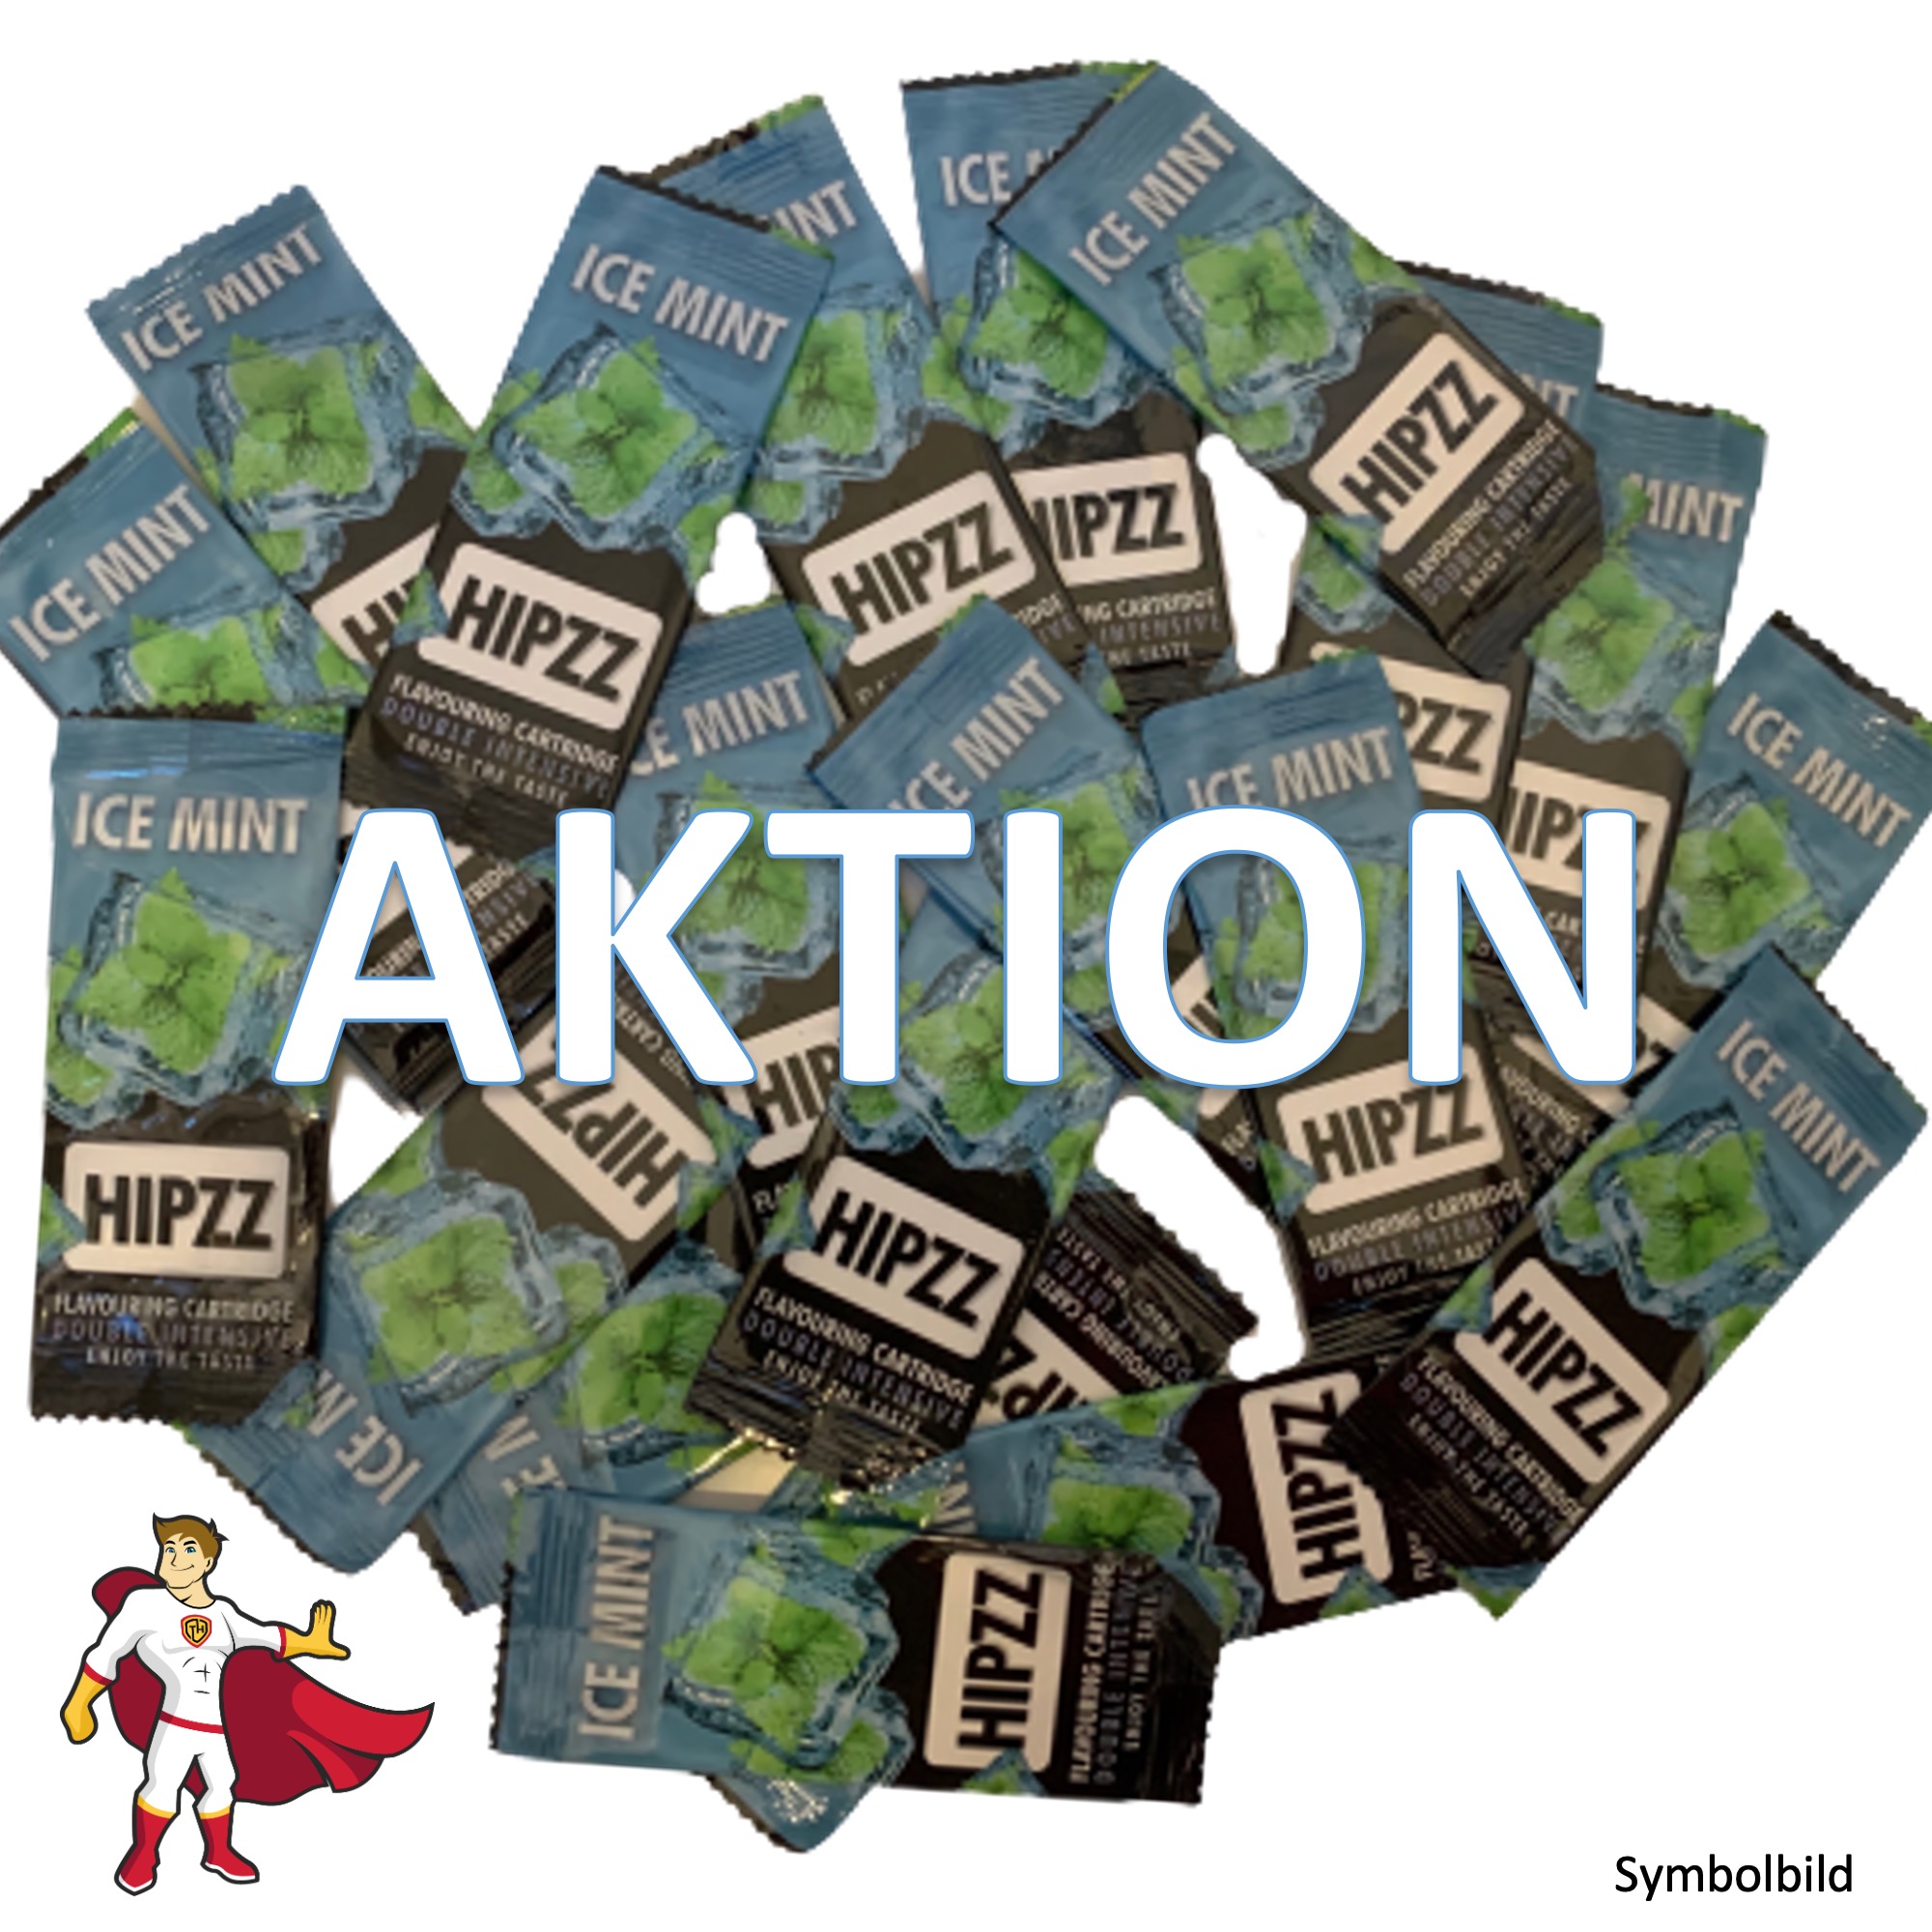 AKTION: HIPZZ Aromakarten Ice Mint (Pfefferminz) - Aroma Karten (wie Rizla)